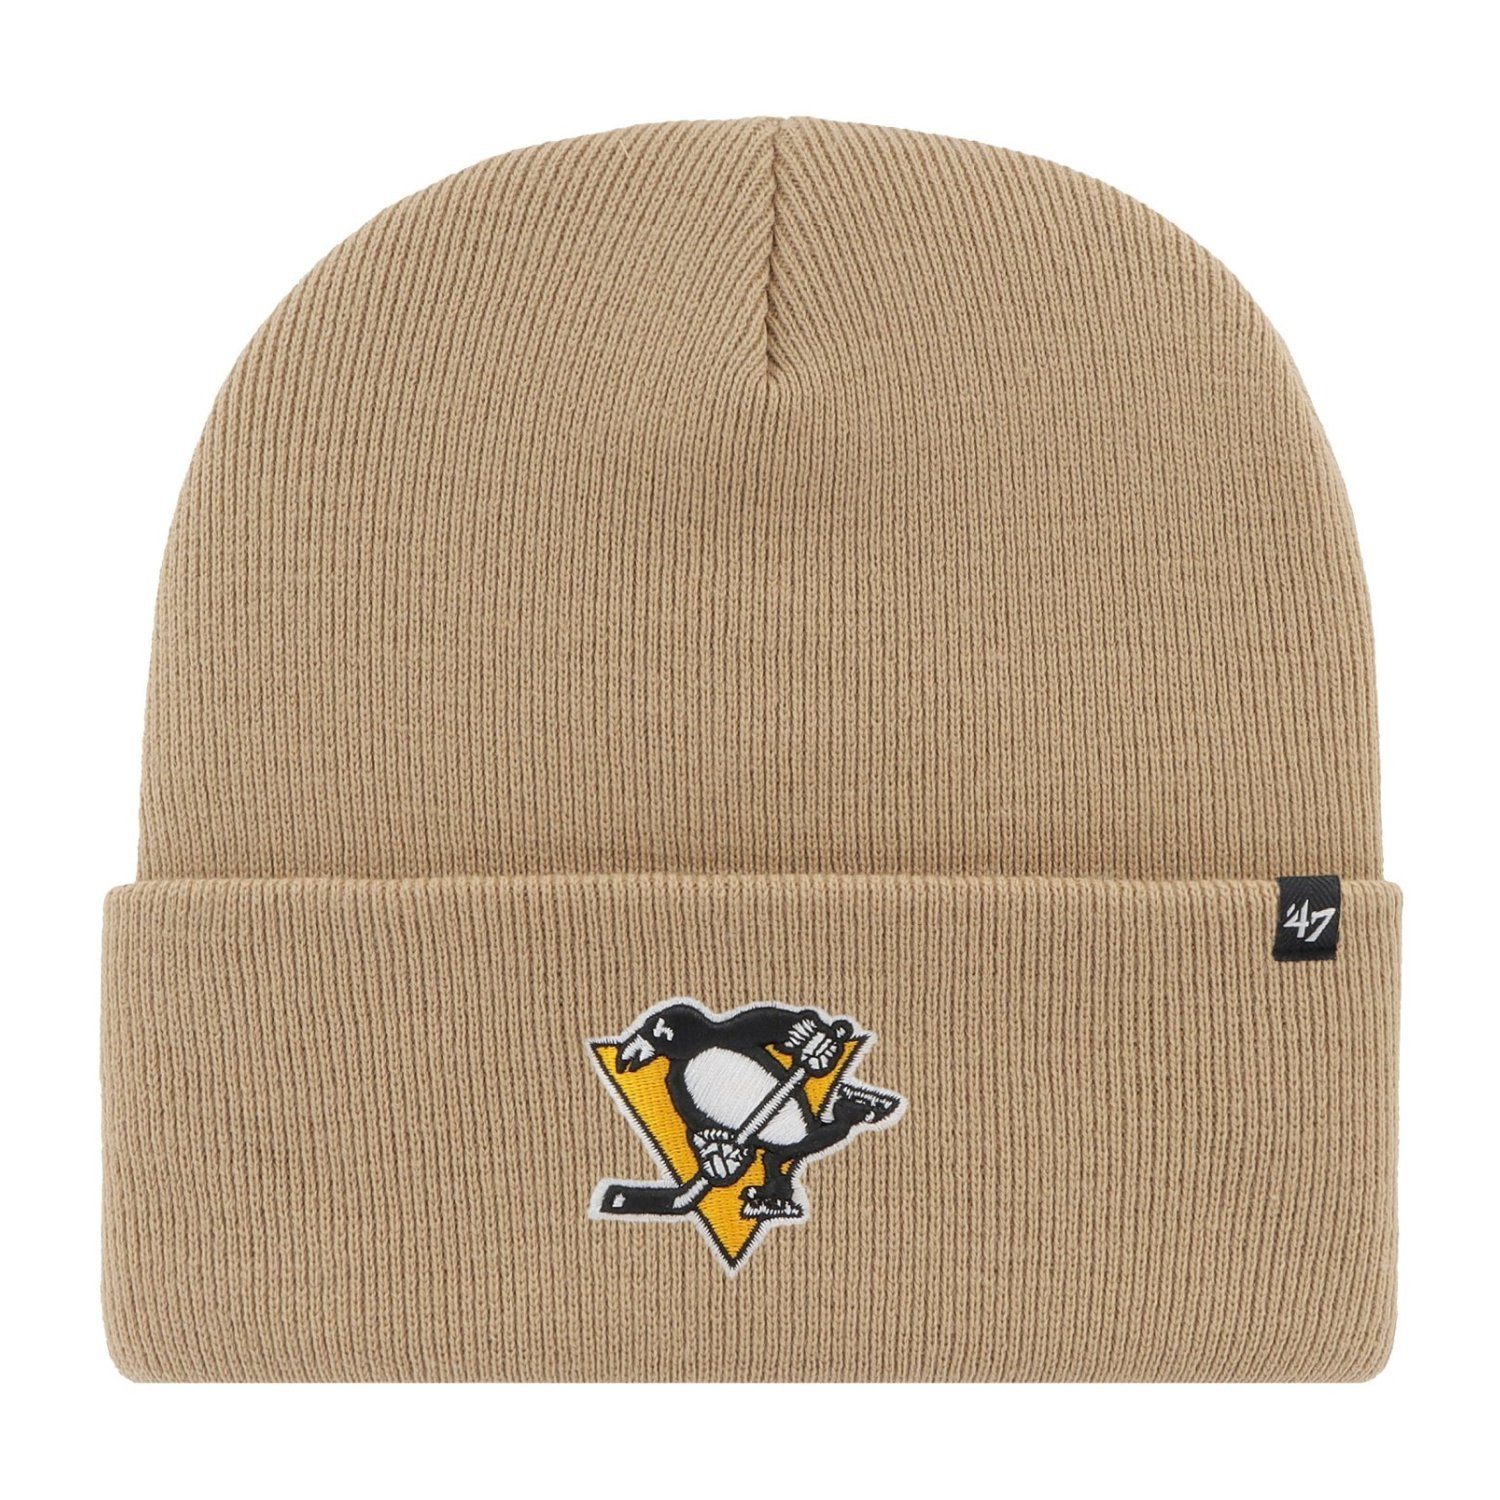 x27;47 Brand Pittsburgh Penguins HAYMAKER Fleecemütze